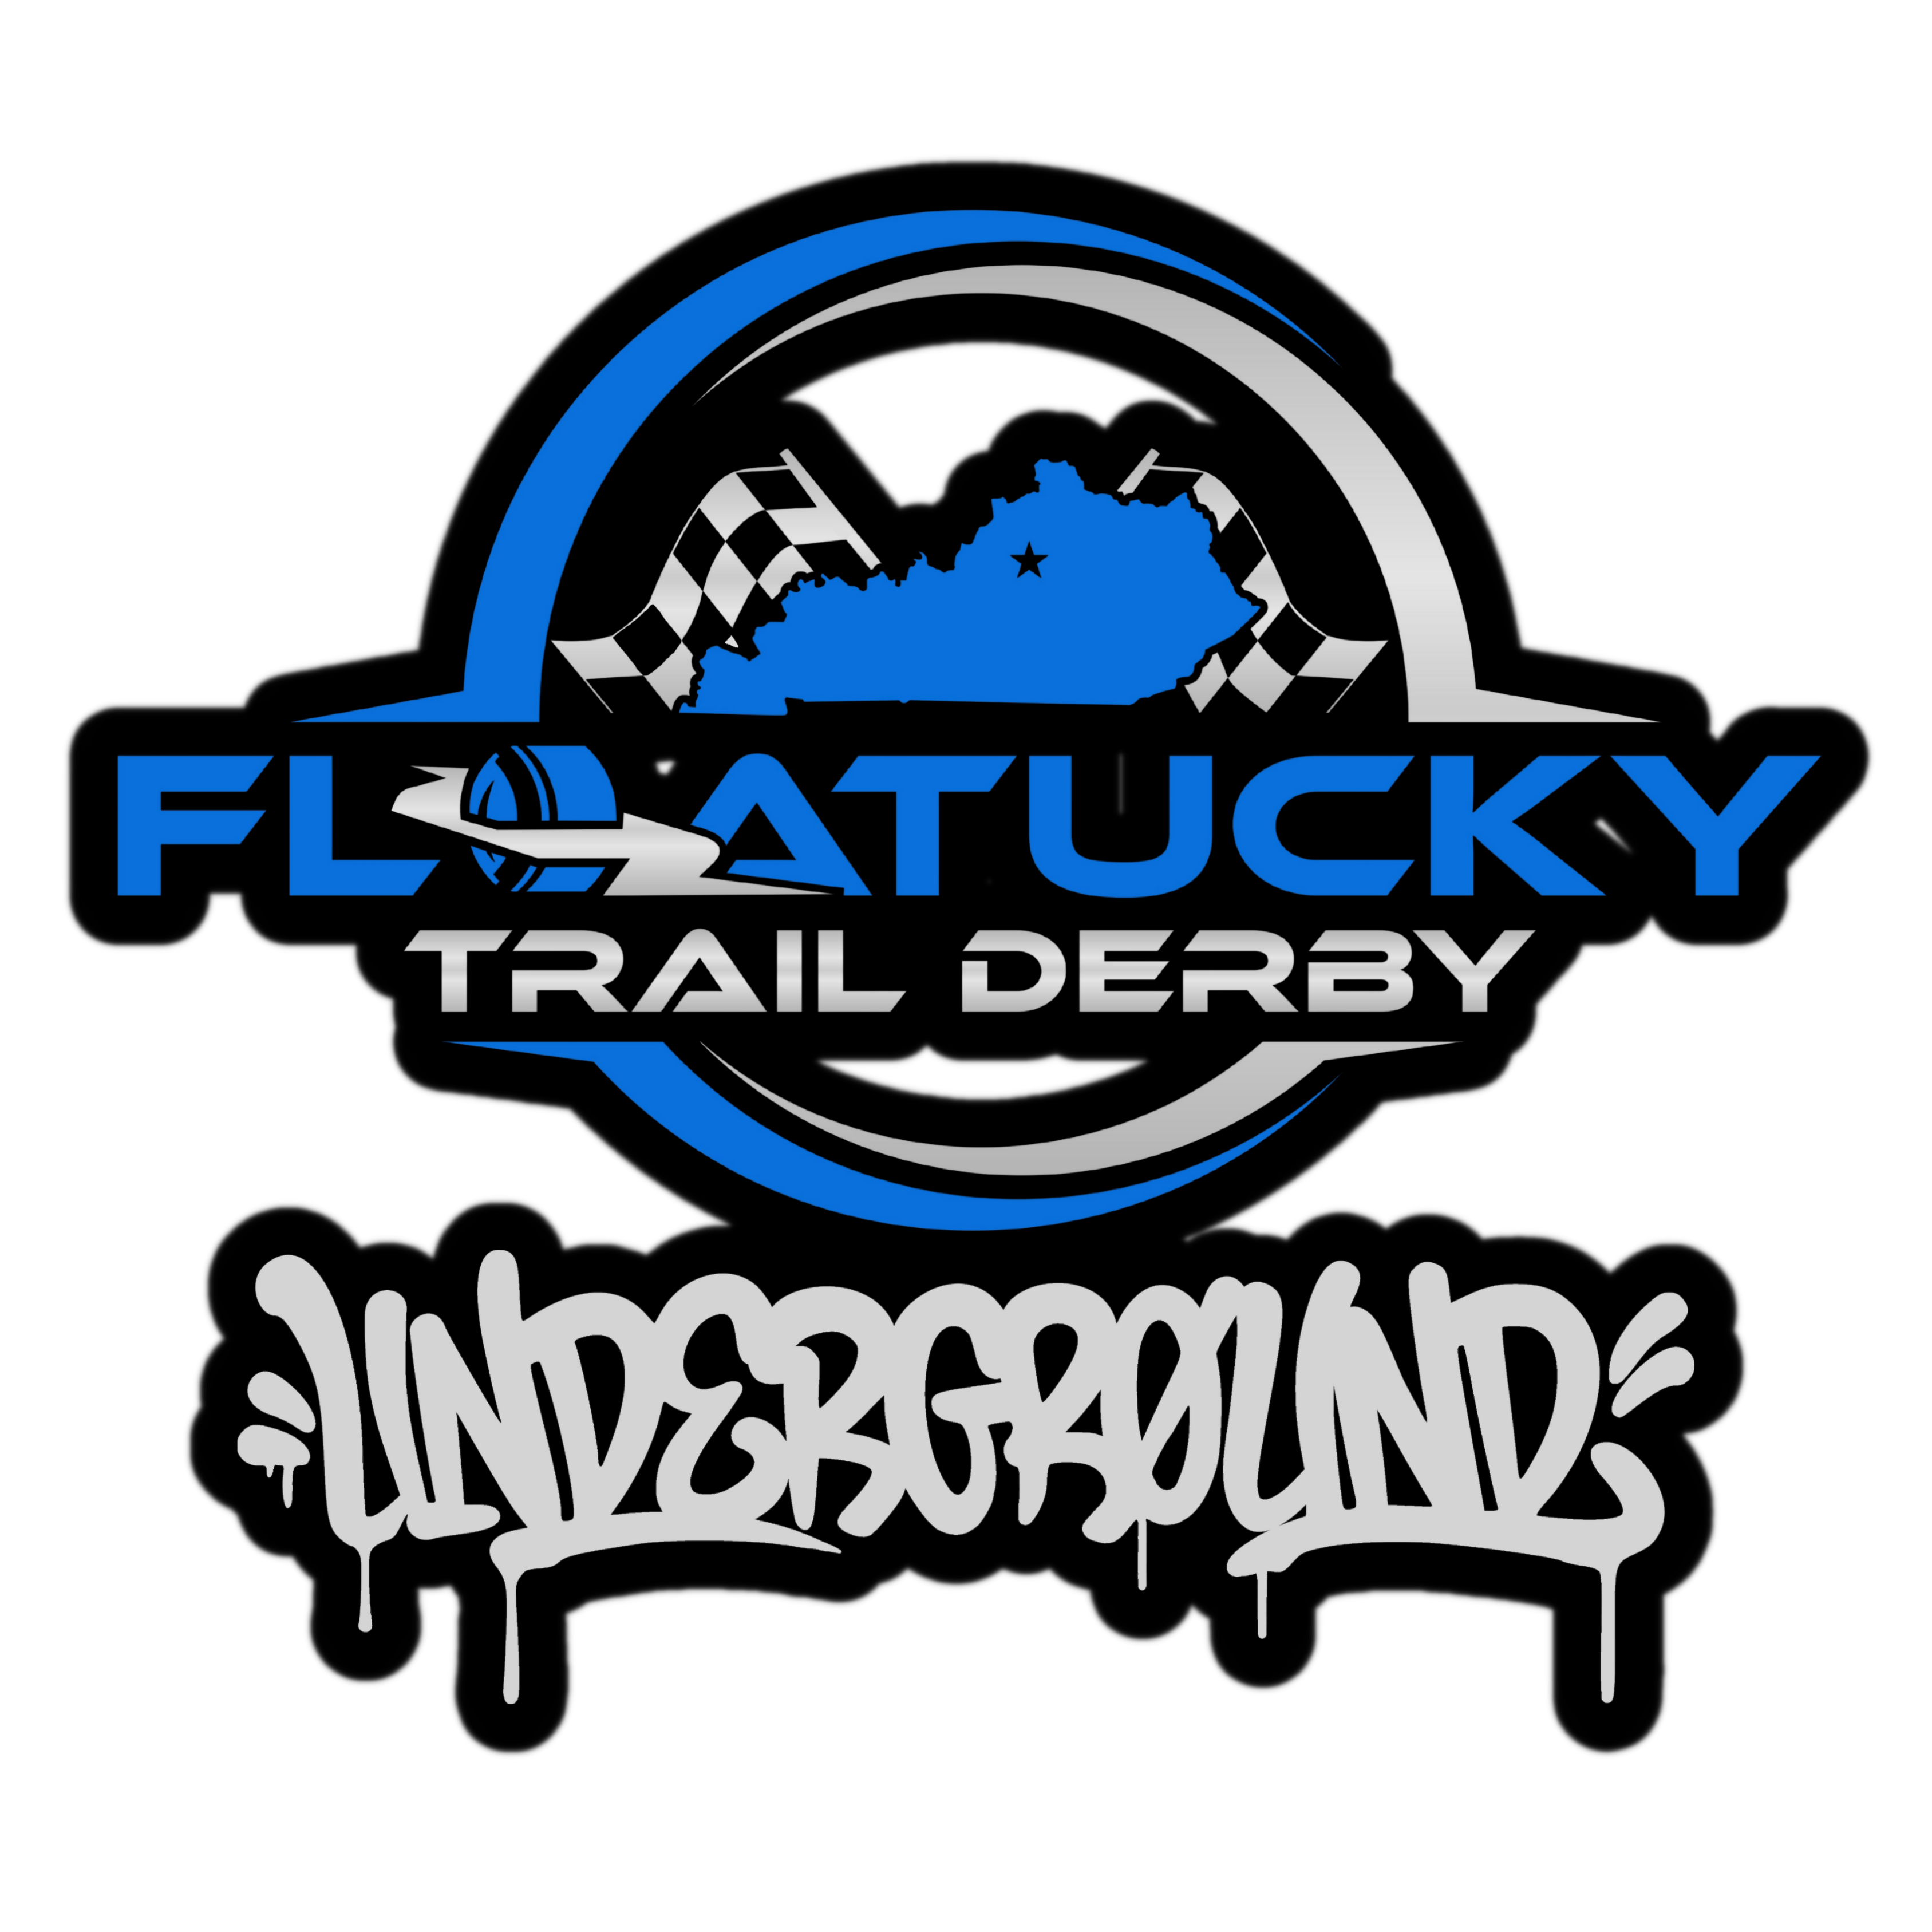 Floatucky Trail Derby